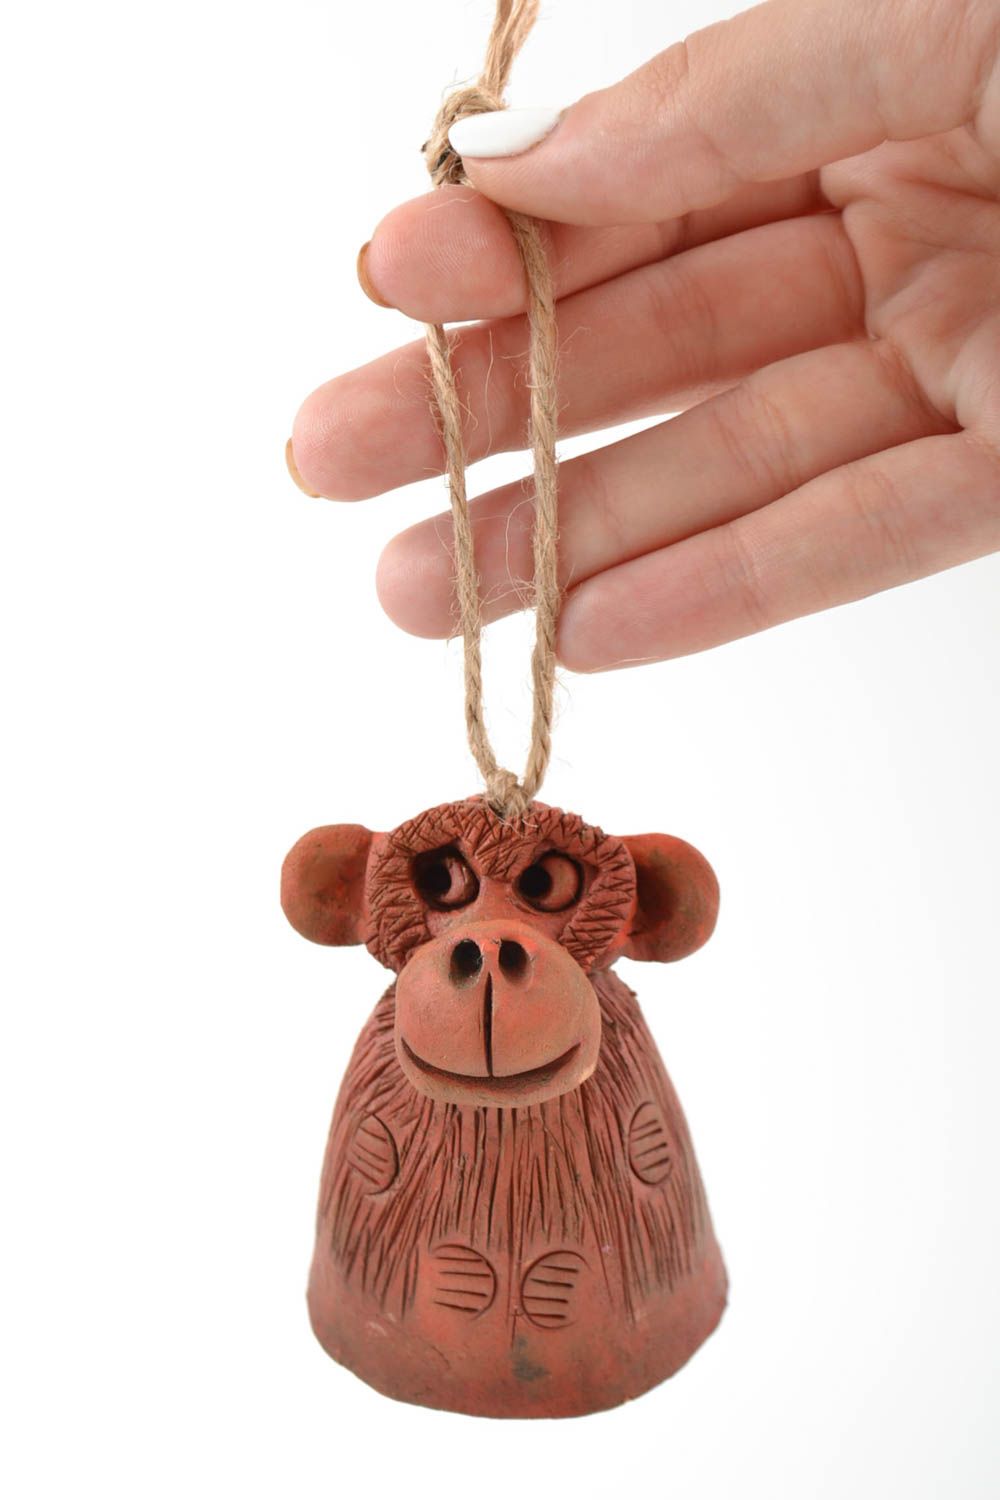 Handgemachtes Glöckchen aus Ton mit Masche originell schön in Form eines Affen foto 2